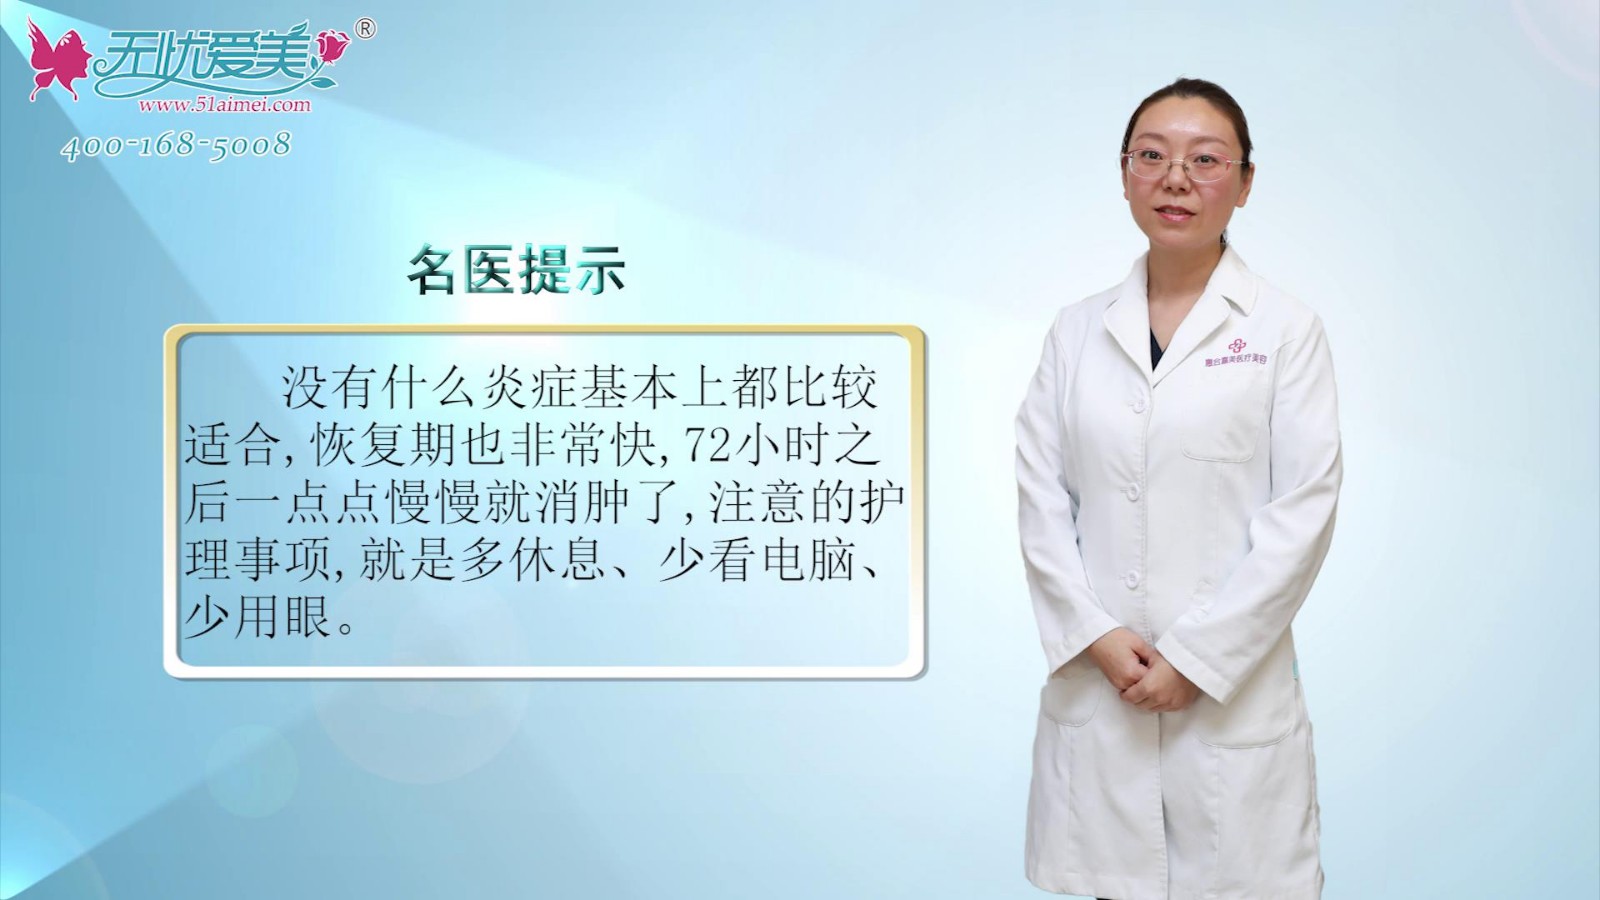 看北京惠合嘉美视频公开眼部精雕的适应症和术后注意事项